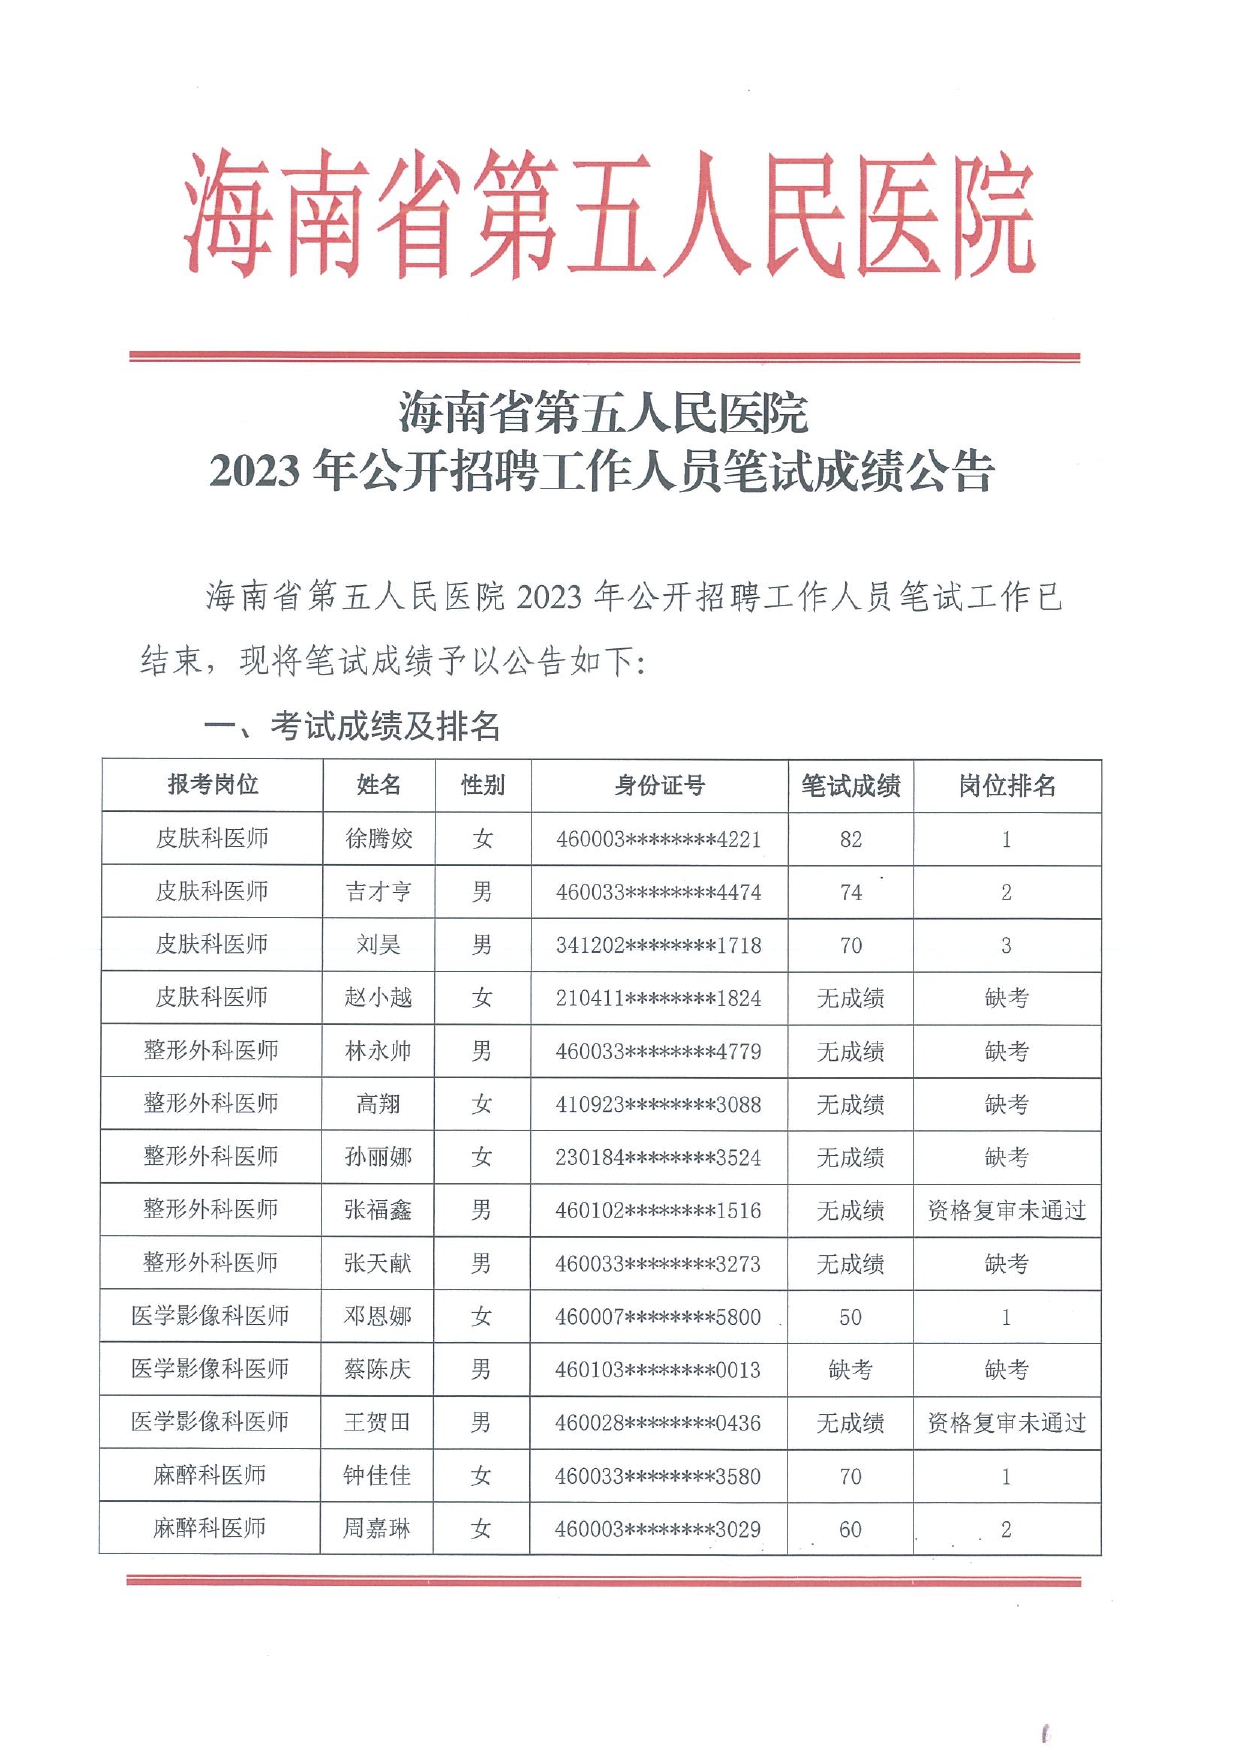 海南省第五人民医院2023年公开招聘工作人员笔试成绩公告_page-0001.jpg